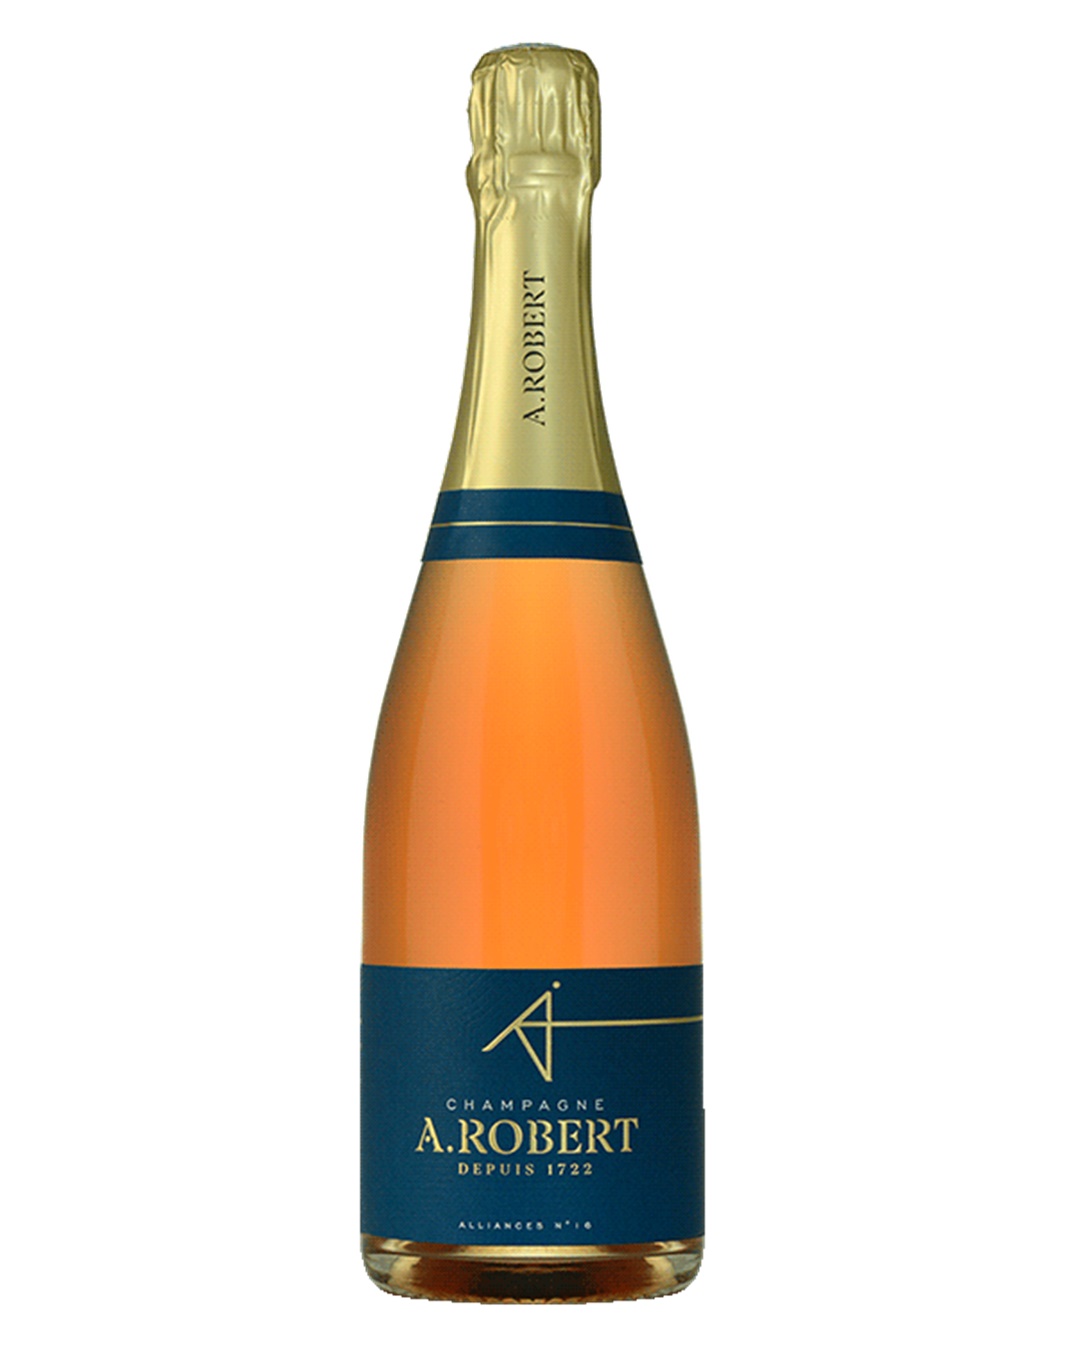 Champagne A. Robert Alliances 16 Rosé